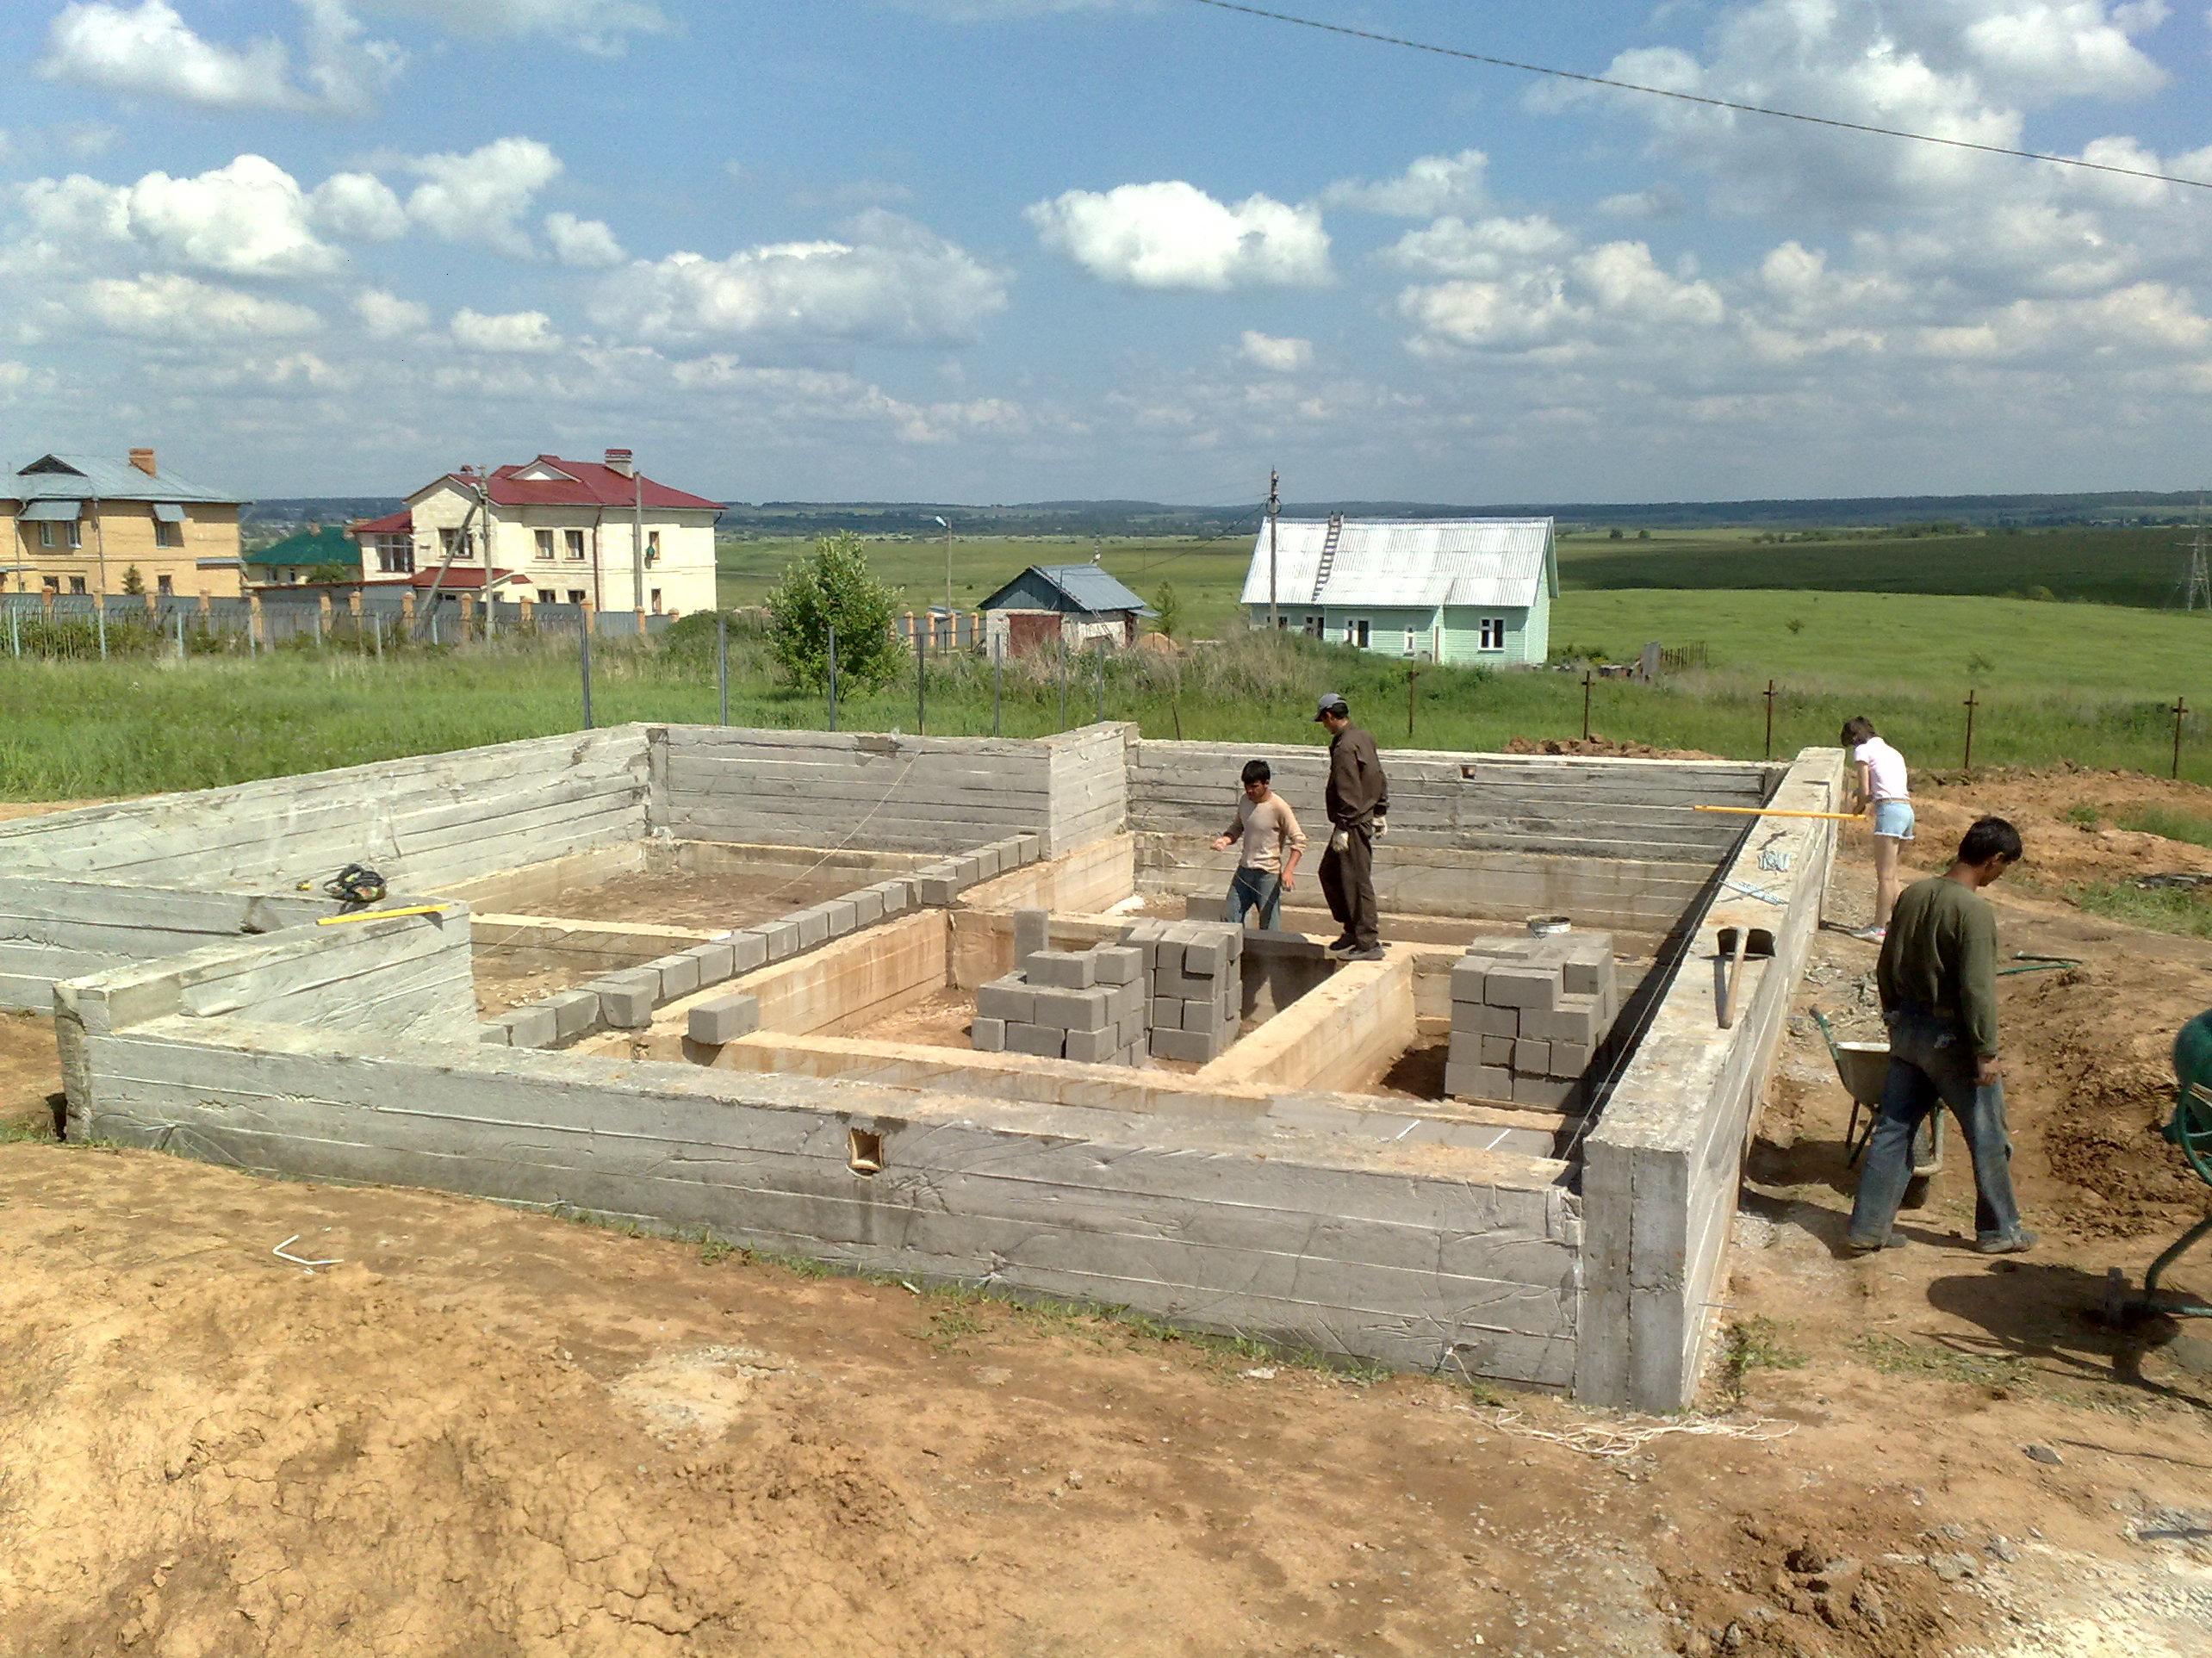  чего начинать строить дом: троительство дома - с чего начать строить .